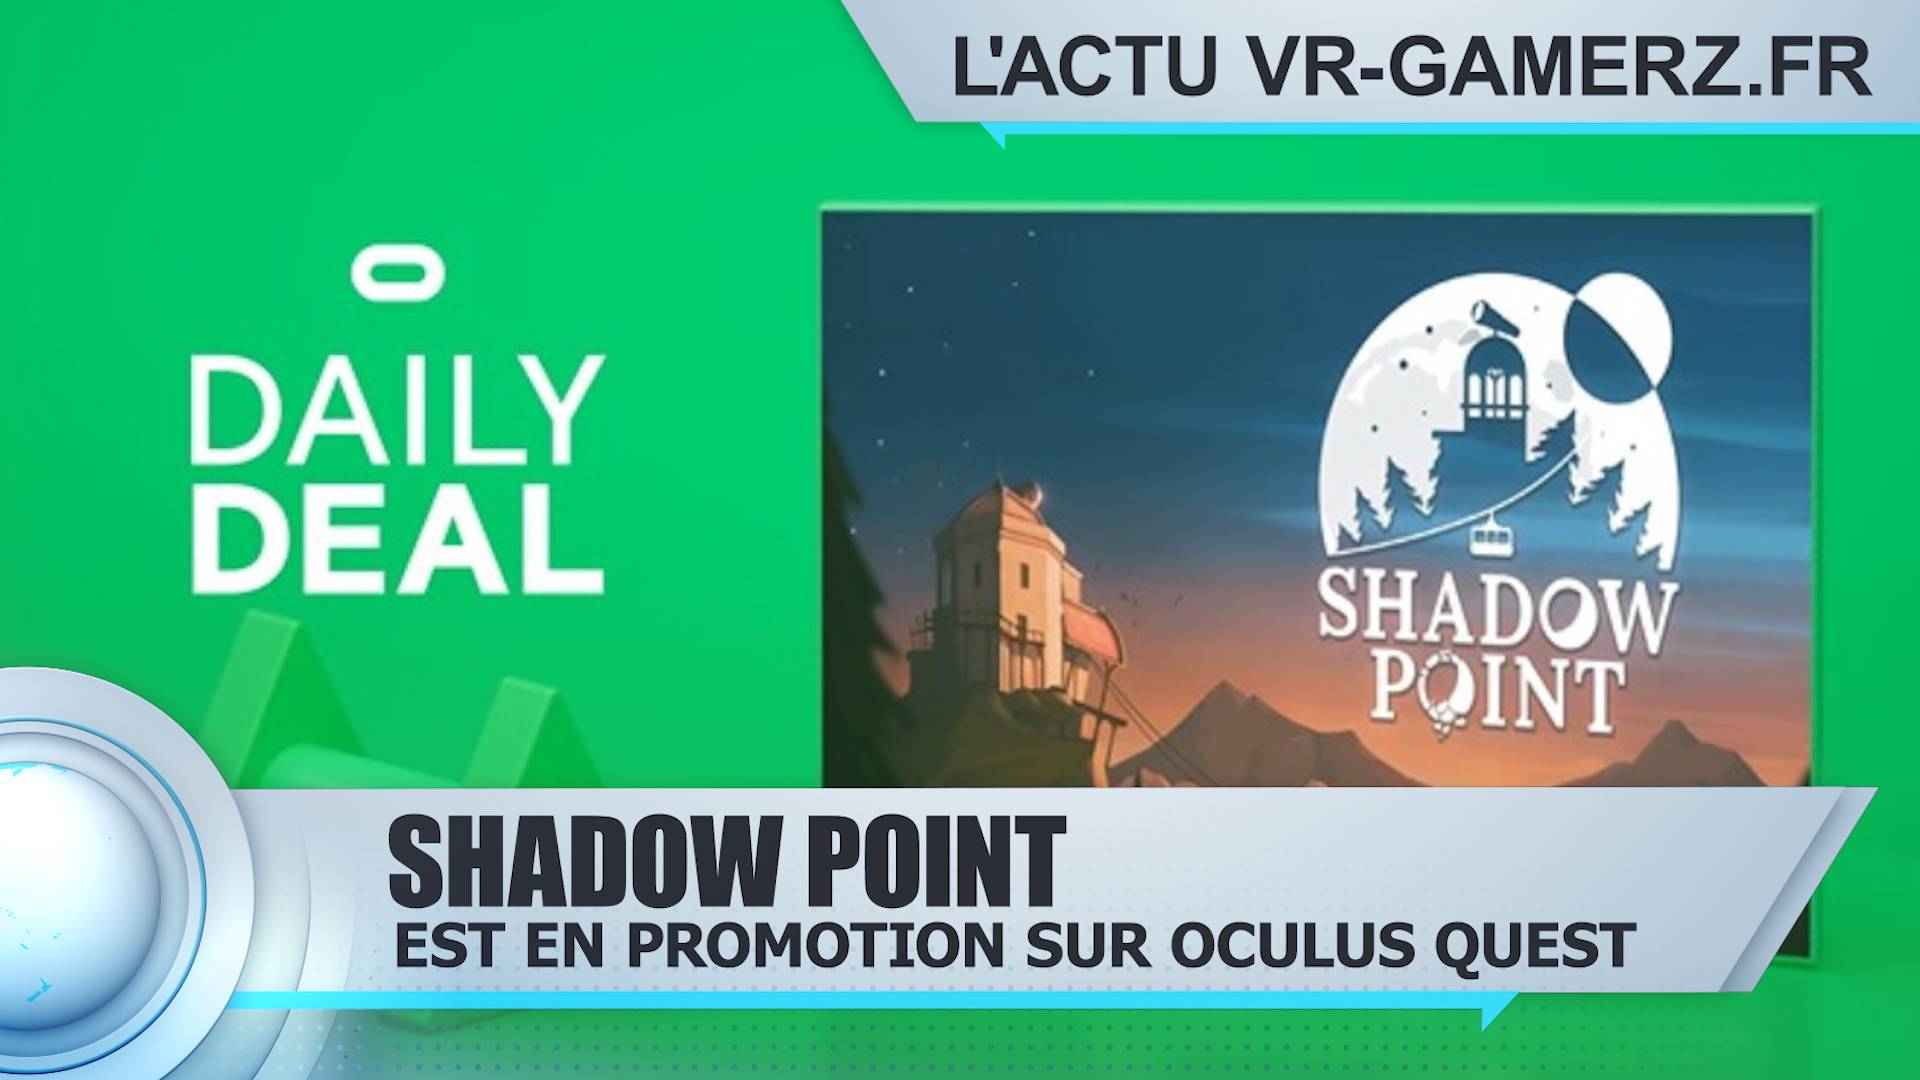 Shadow Point est en promotion sur Oculus quest !